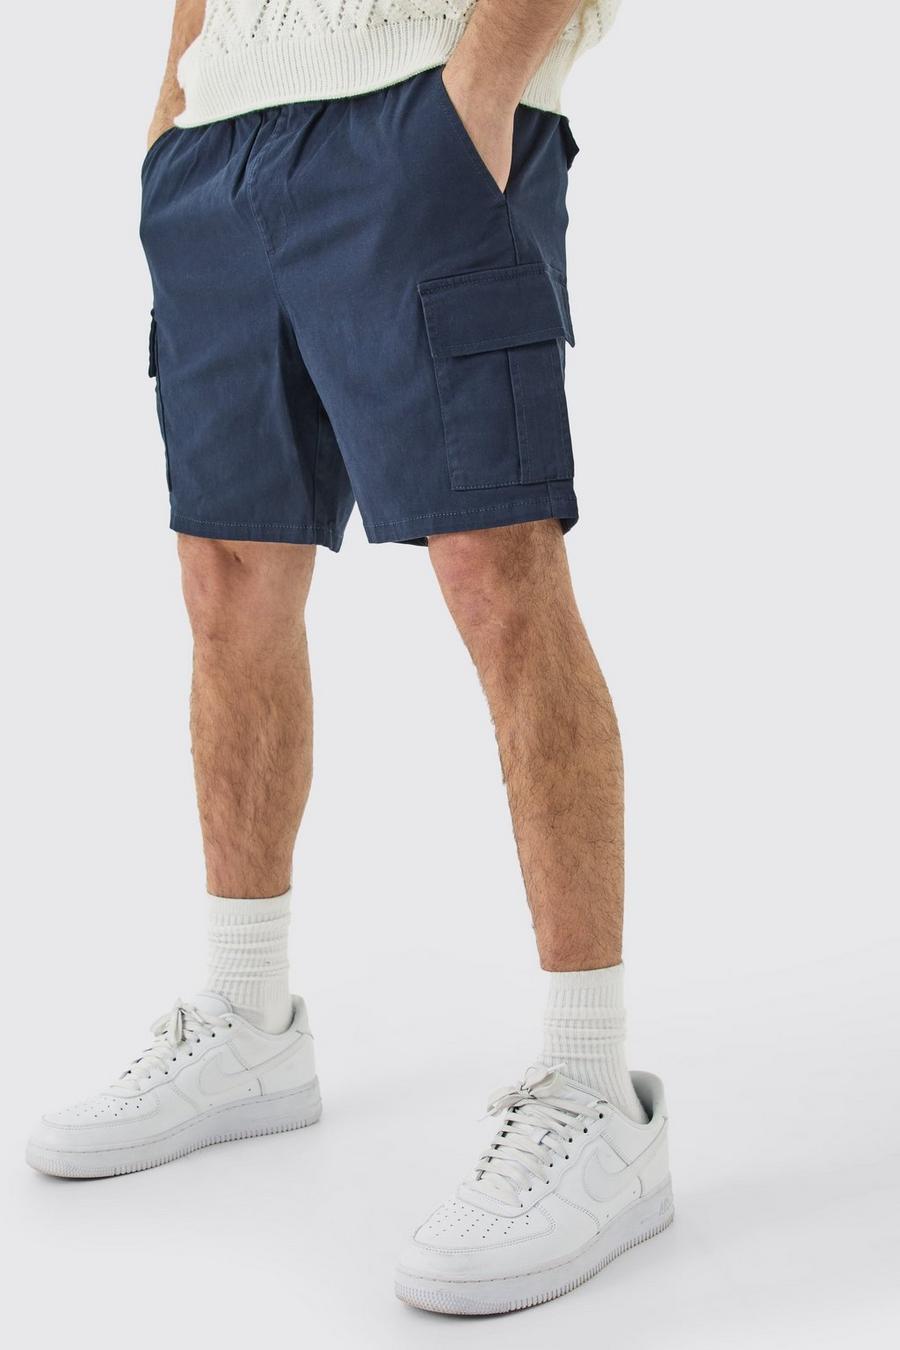 Pantalón corto cargo ajustado azul marino con cintura elástica, Navy